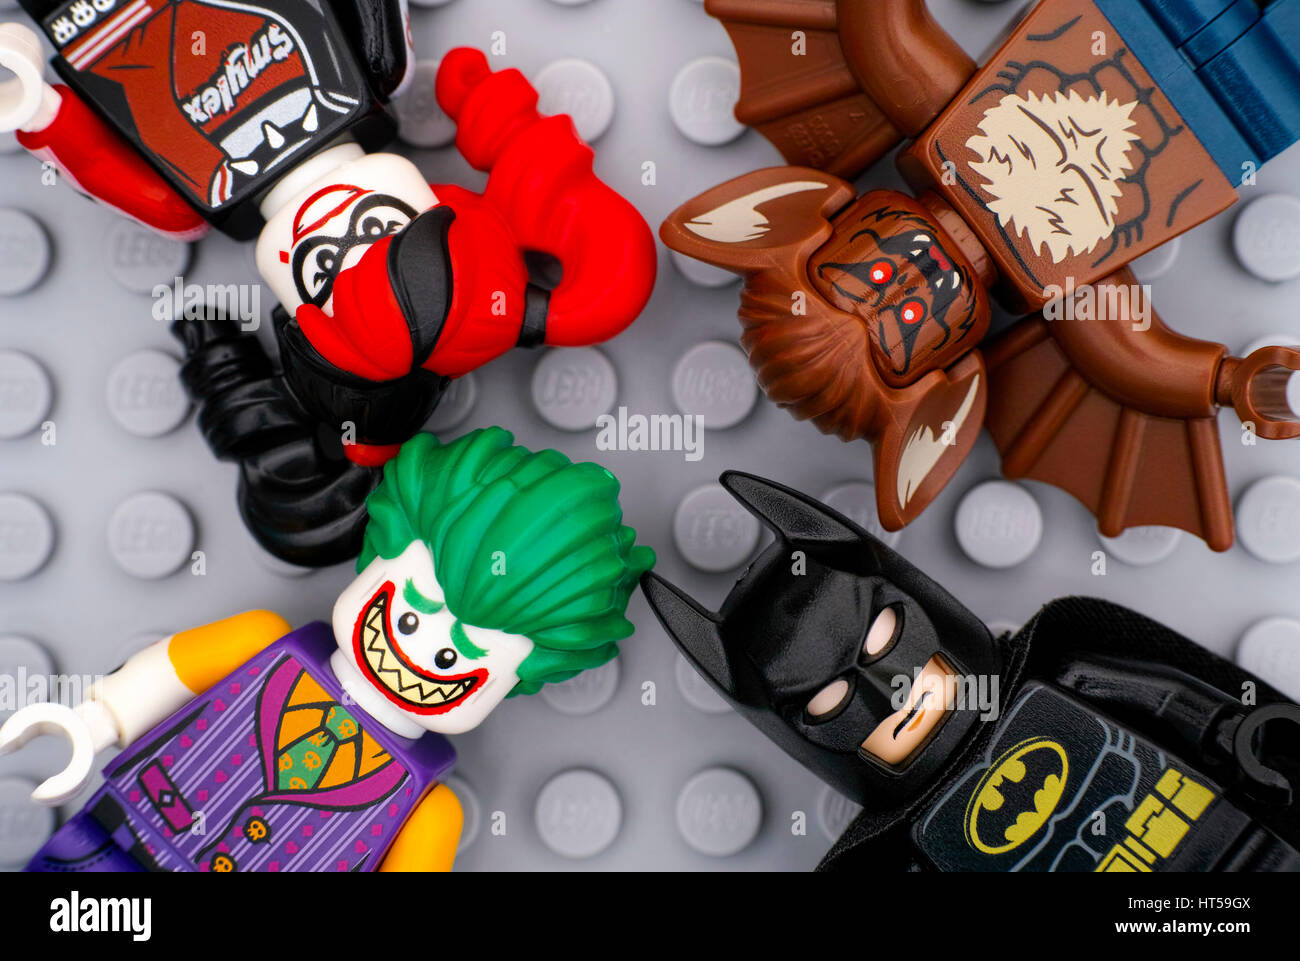 Tambow, Russische Föderation - 11. Februar 2017 vier Lego Minifiguren - Batman, The Joker, Harley Quinn und Man-Bat - auf Lego grauer Grundplatte Hintergrund Stockfoto